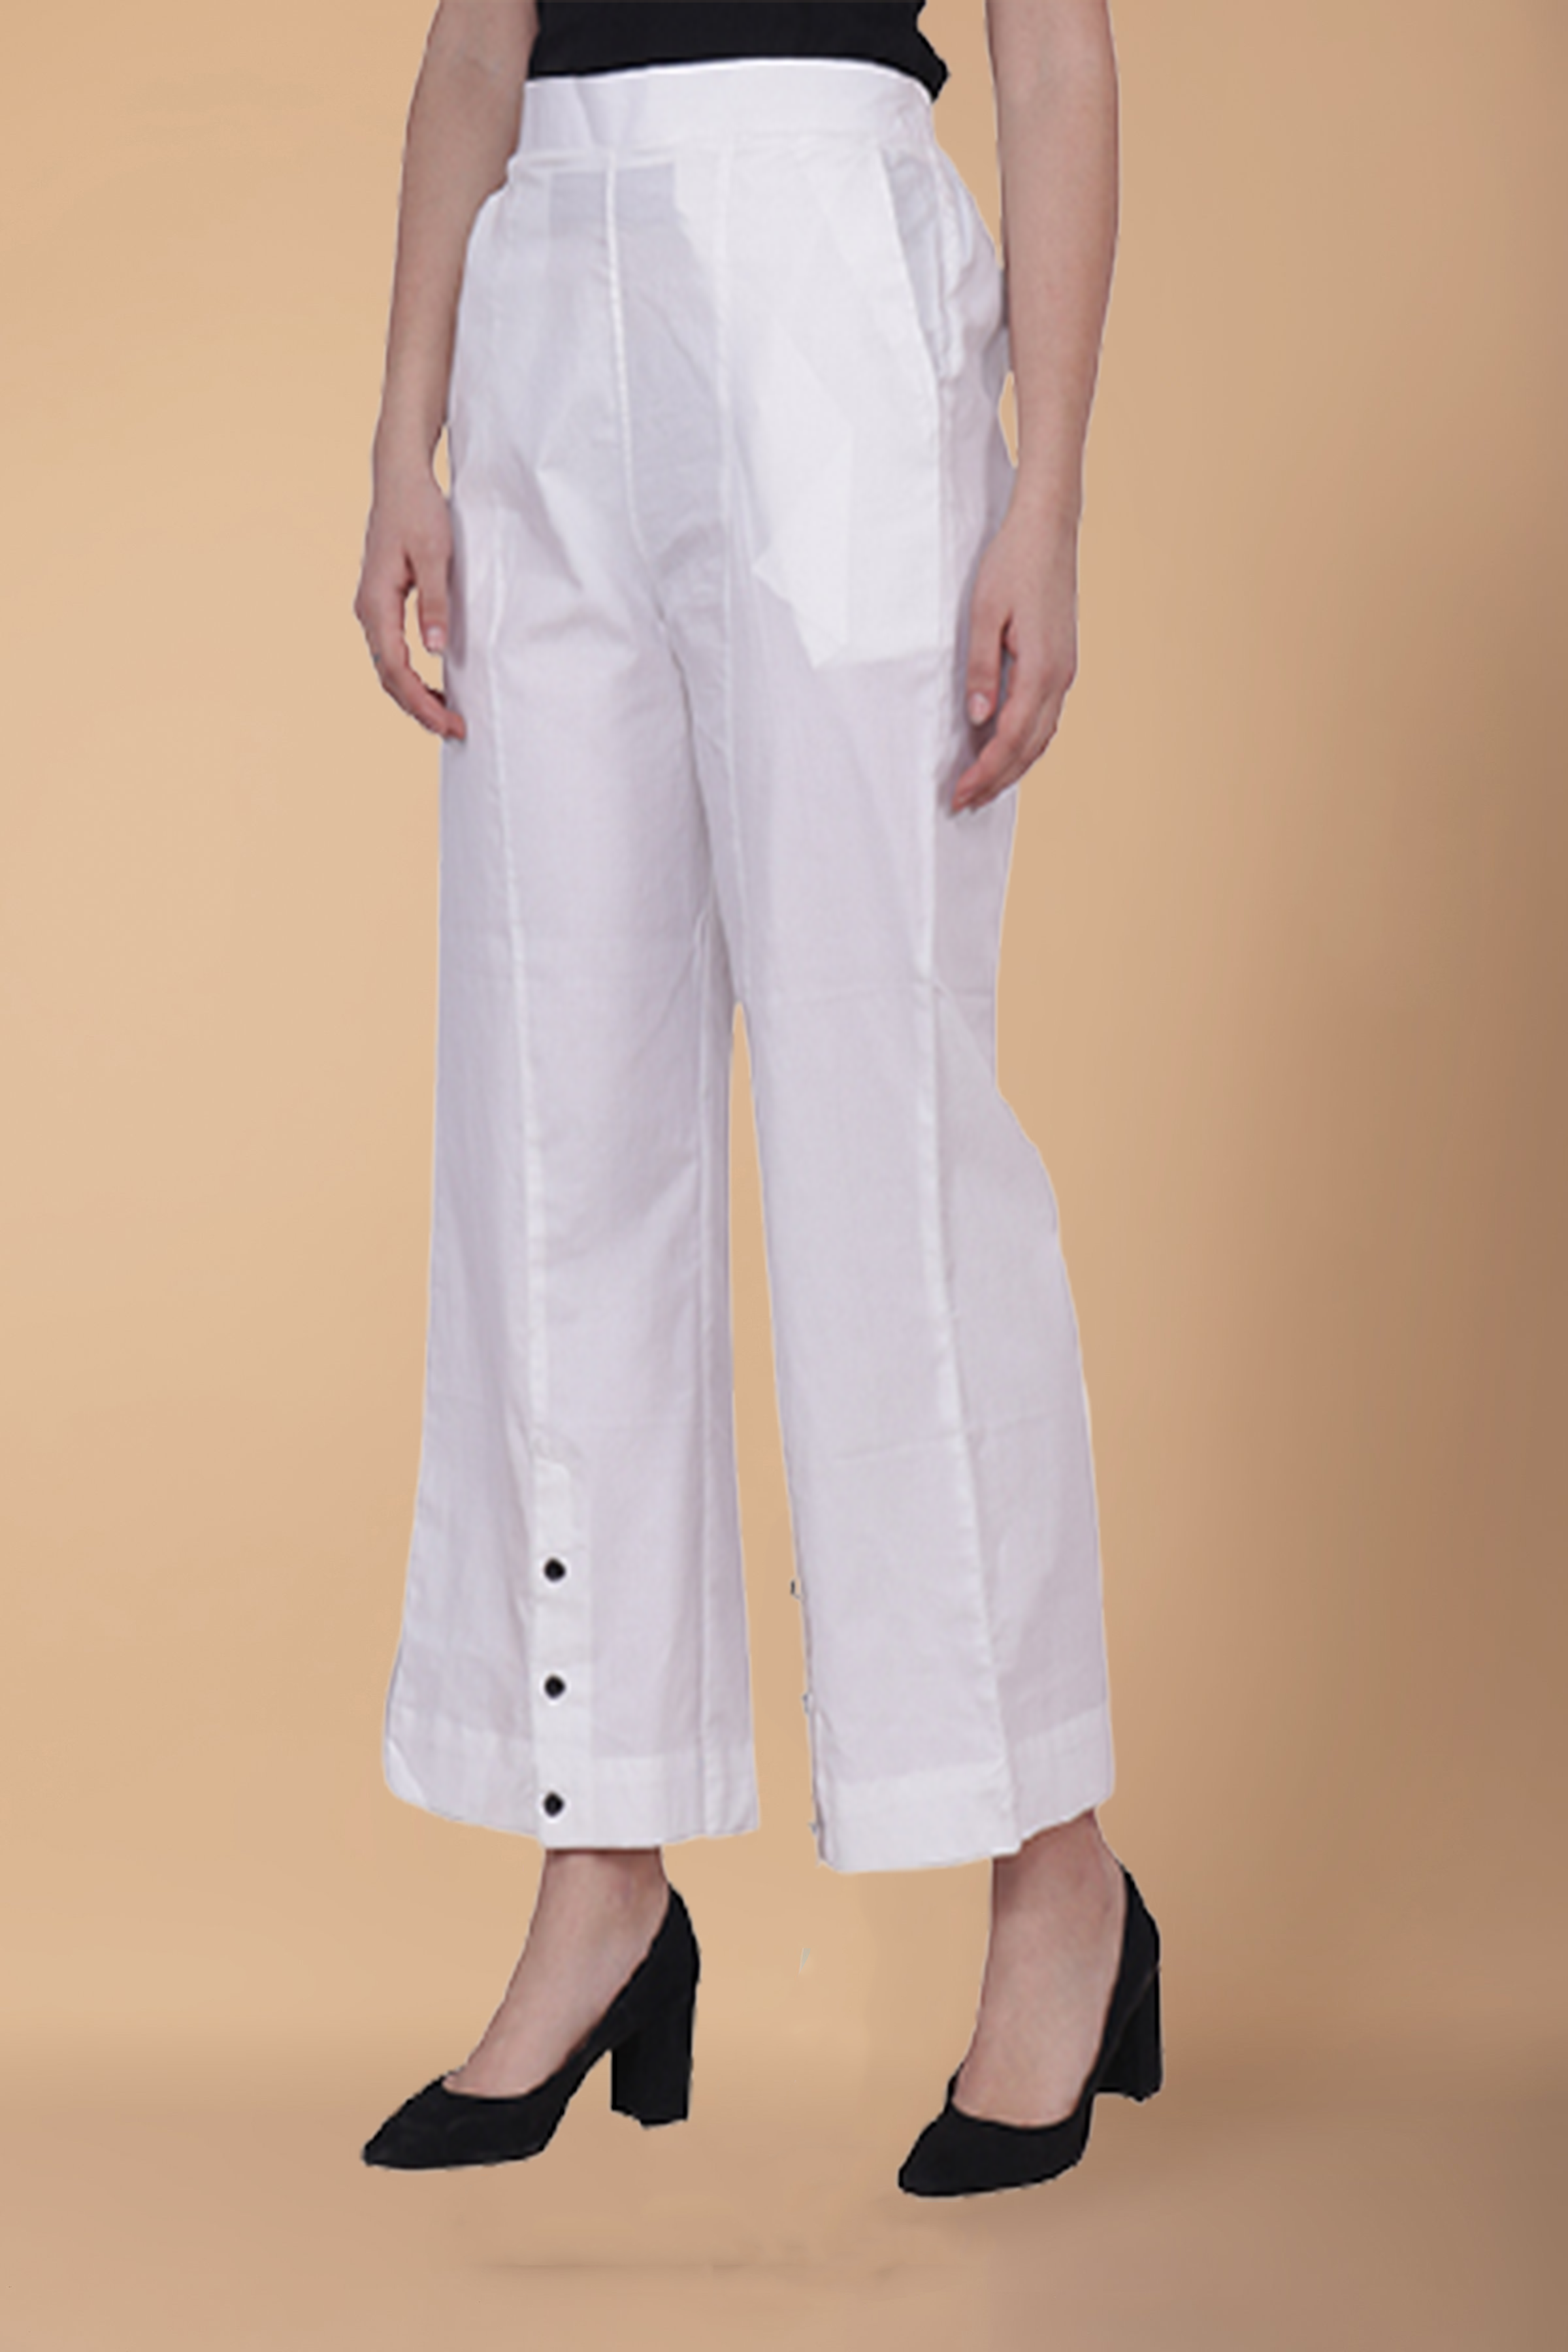 white wide leg trouser suit